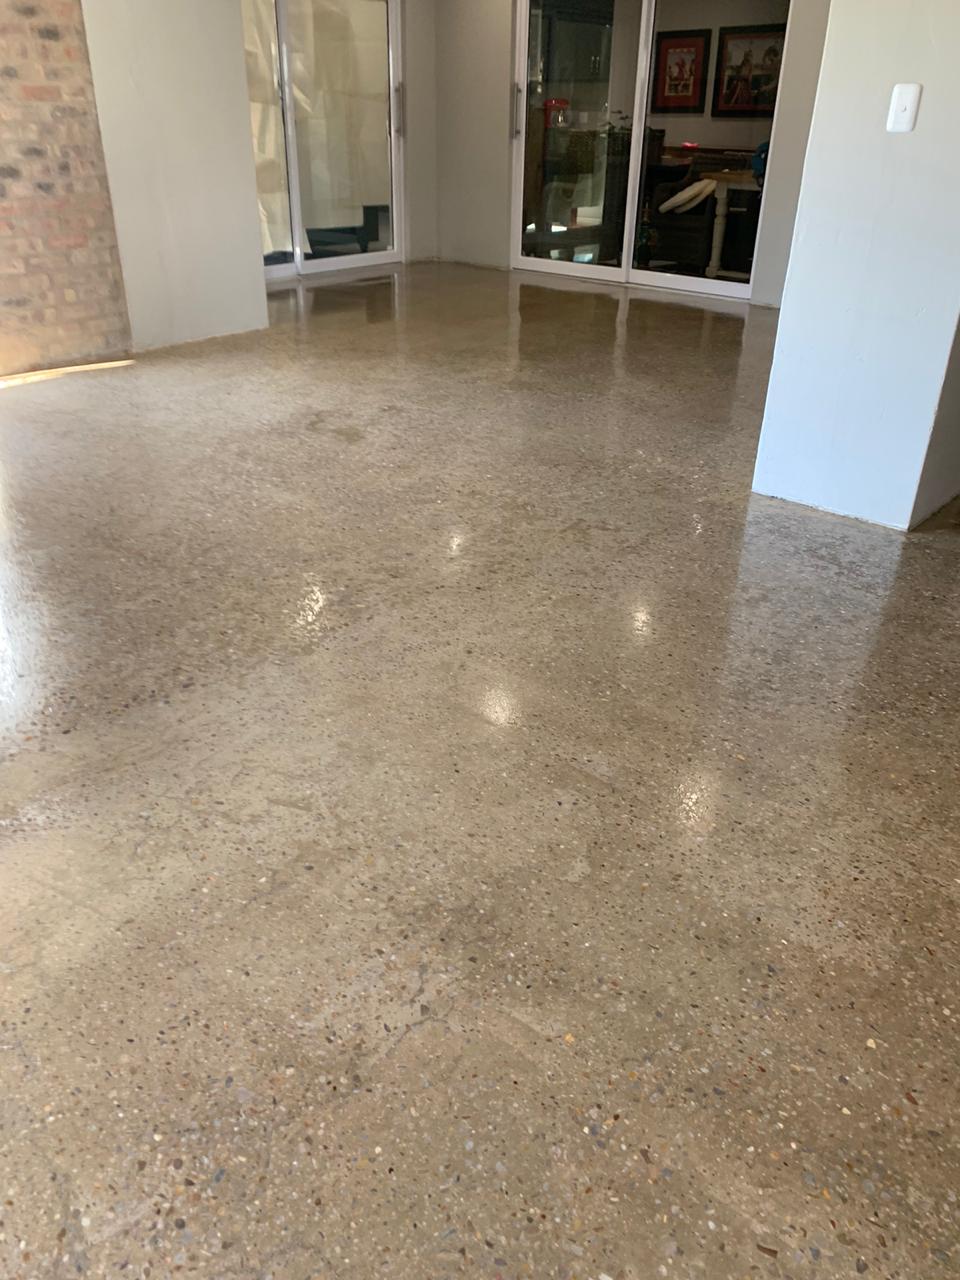 Waterproof Floor - Concrete Sealer Flooring - George - South Africa